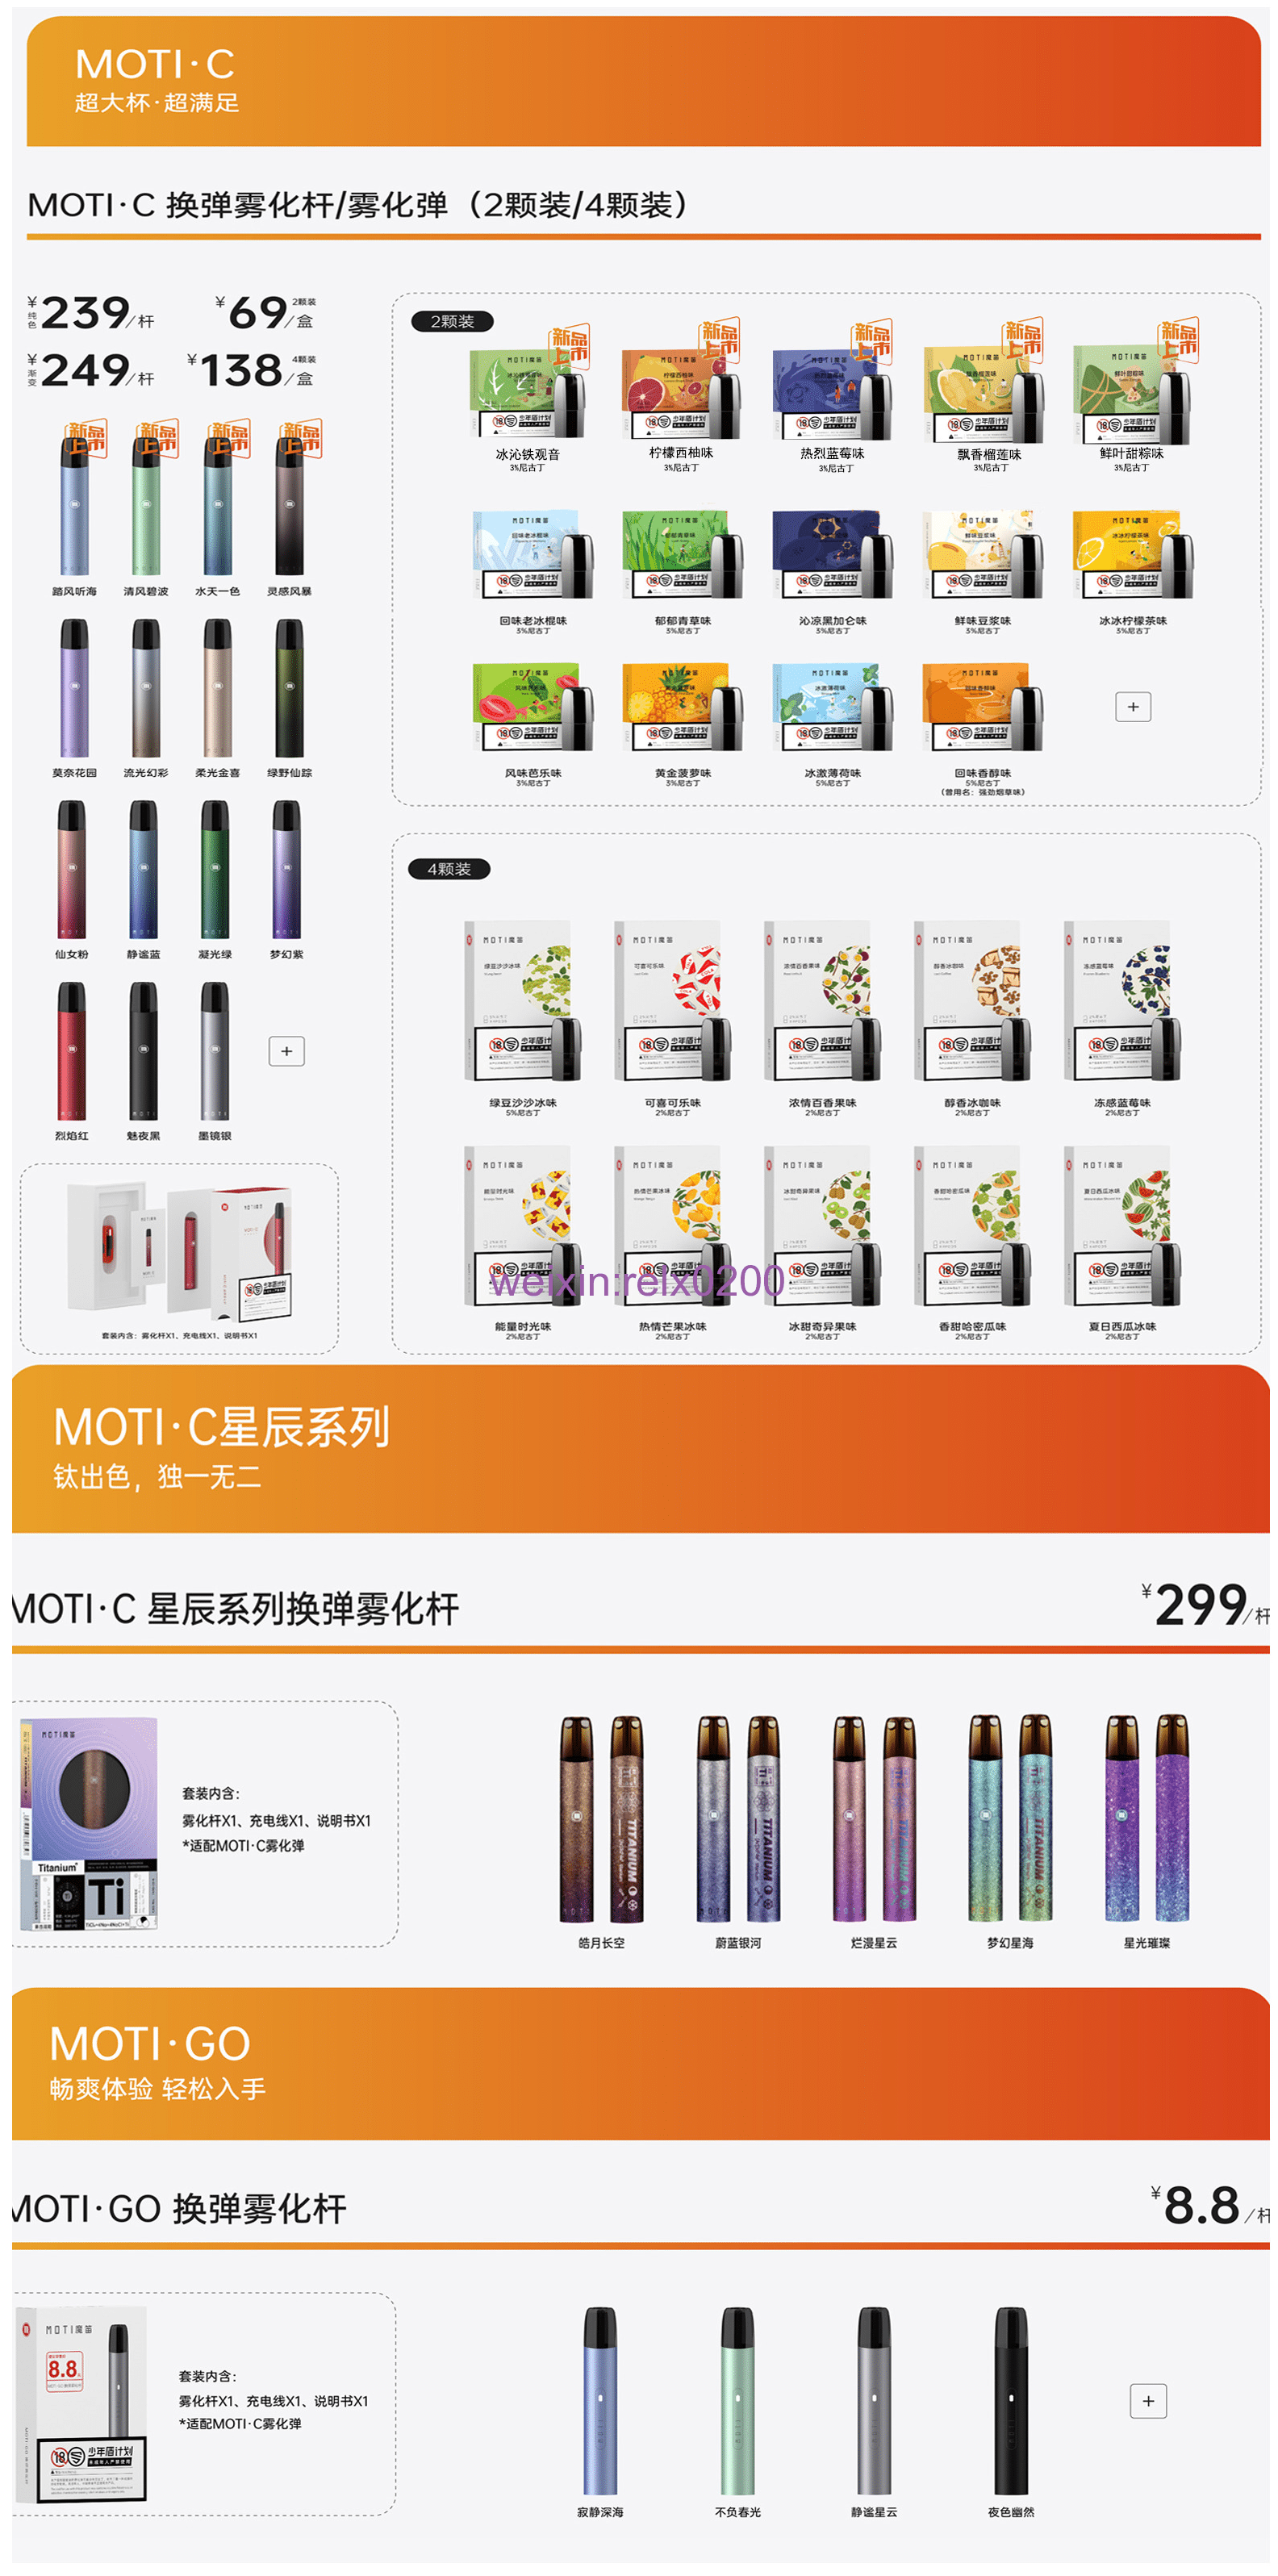 moti魔笛各款电子烟型号官方指导售价列表图如下